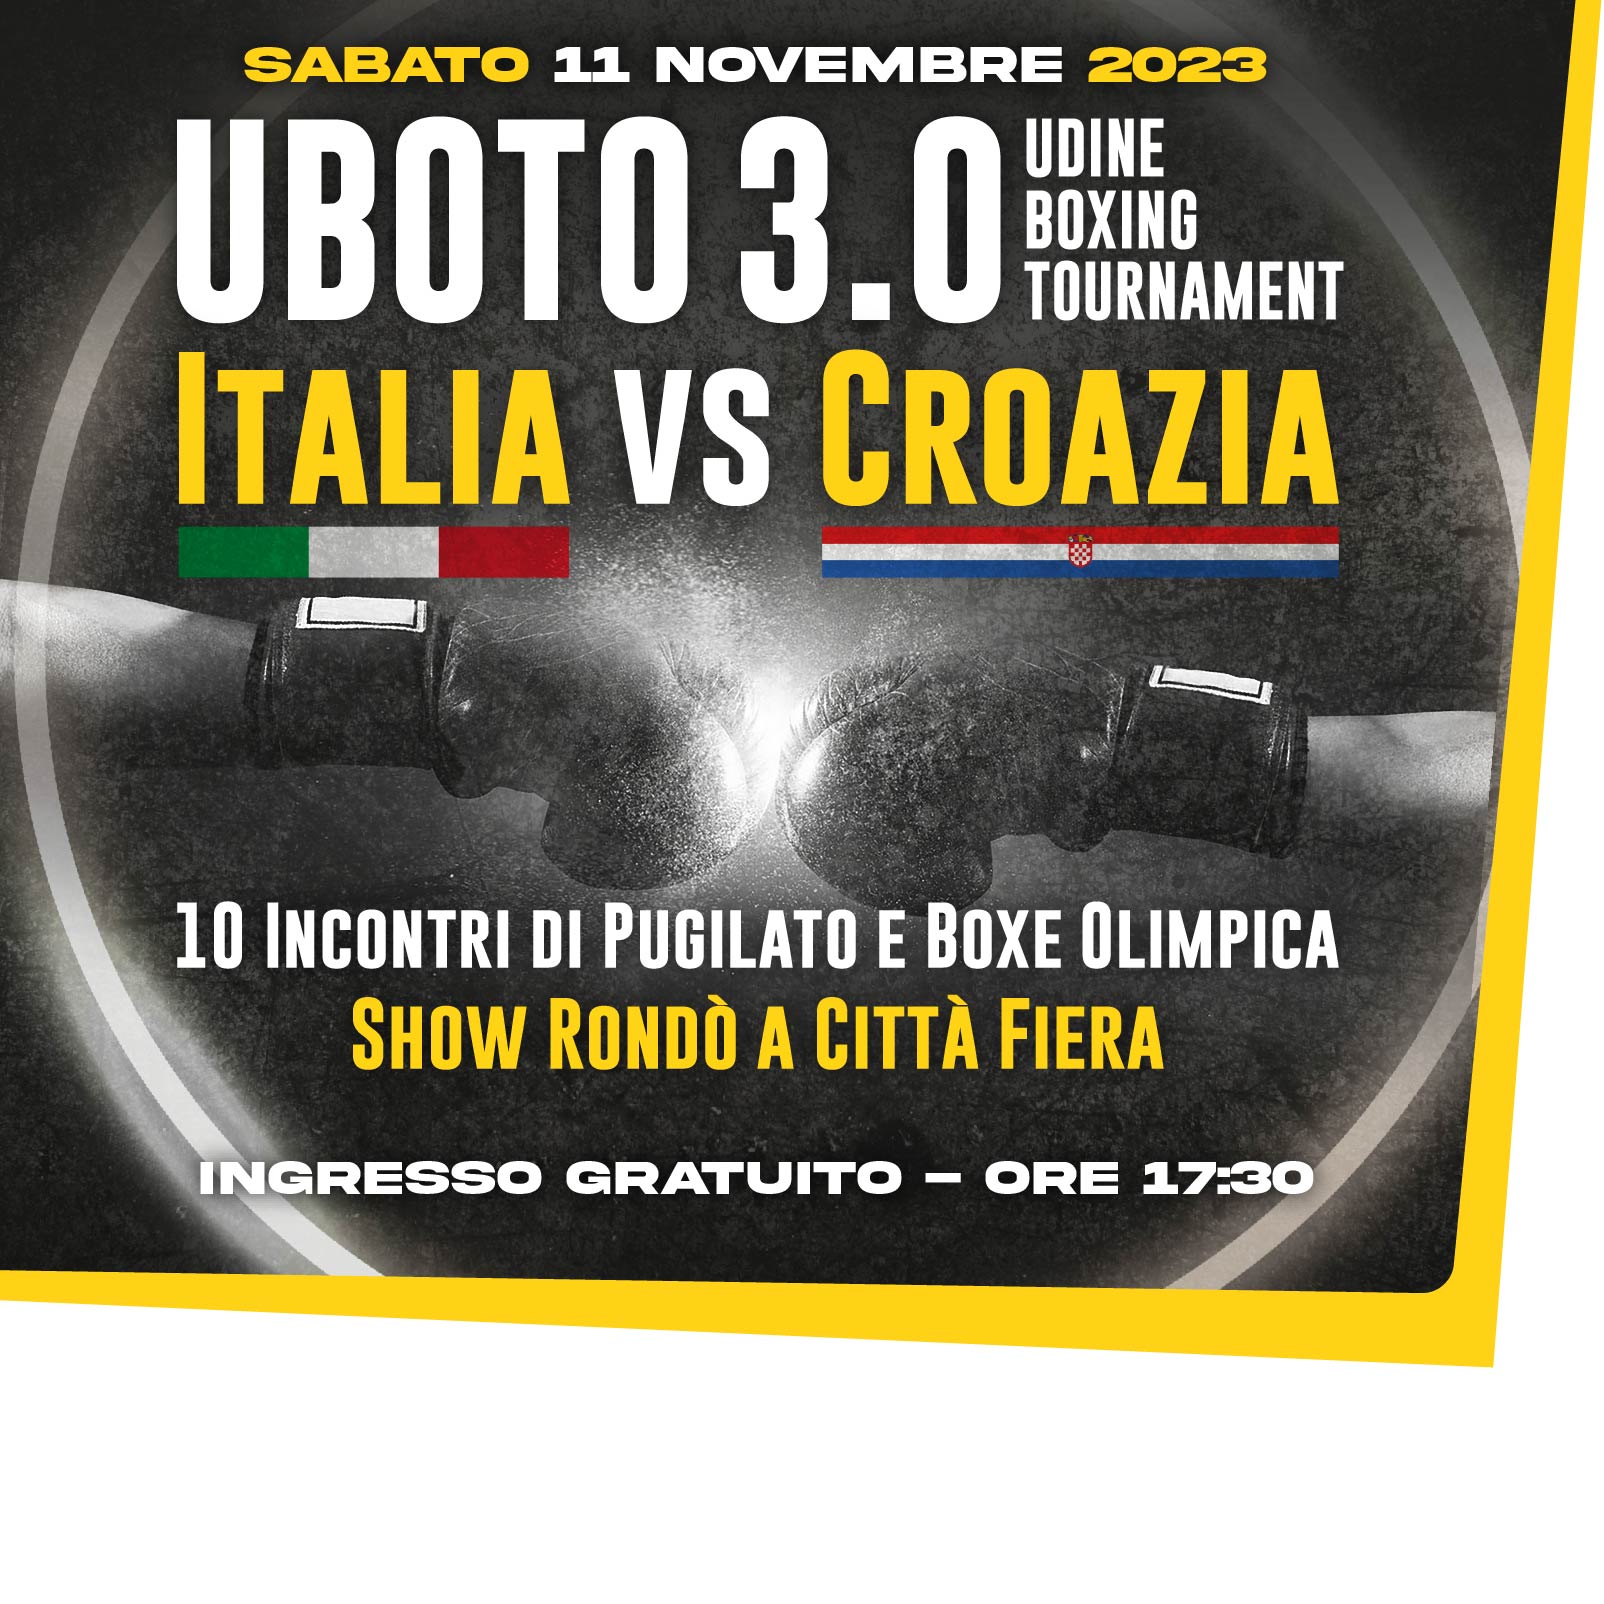 UBOTO 3.0 "Udine BOxing TOurnament”